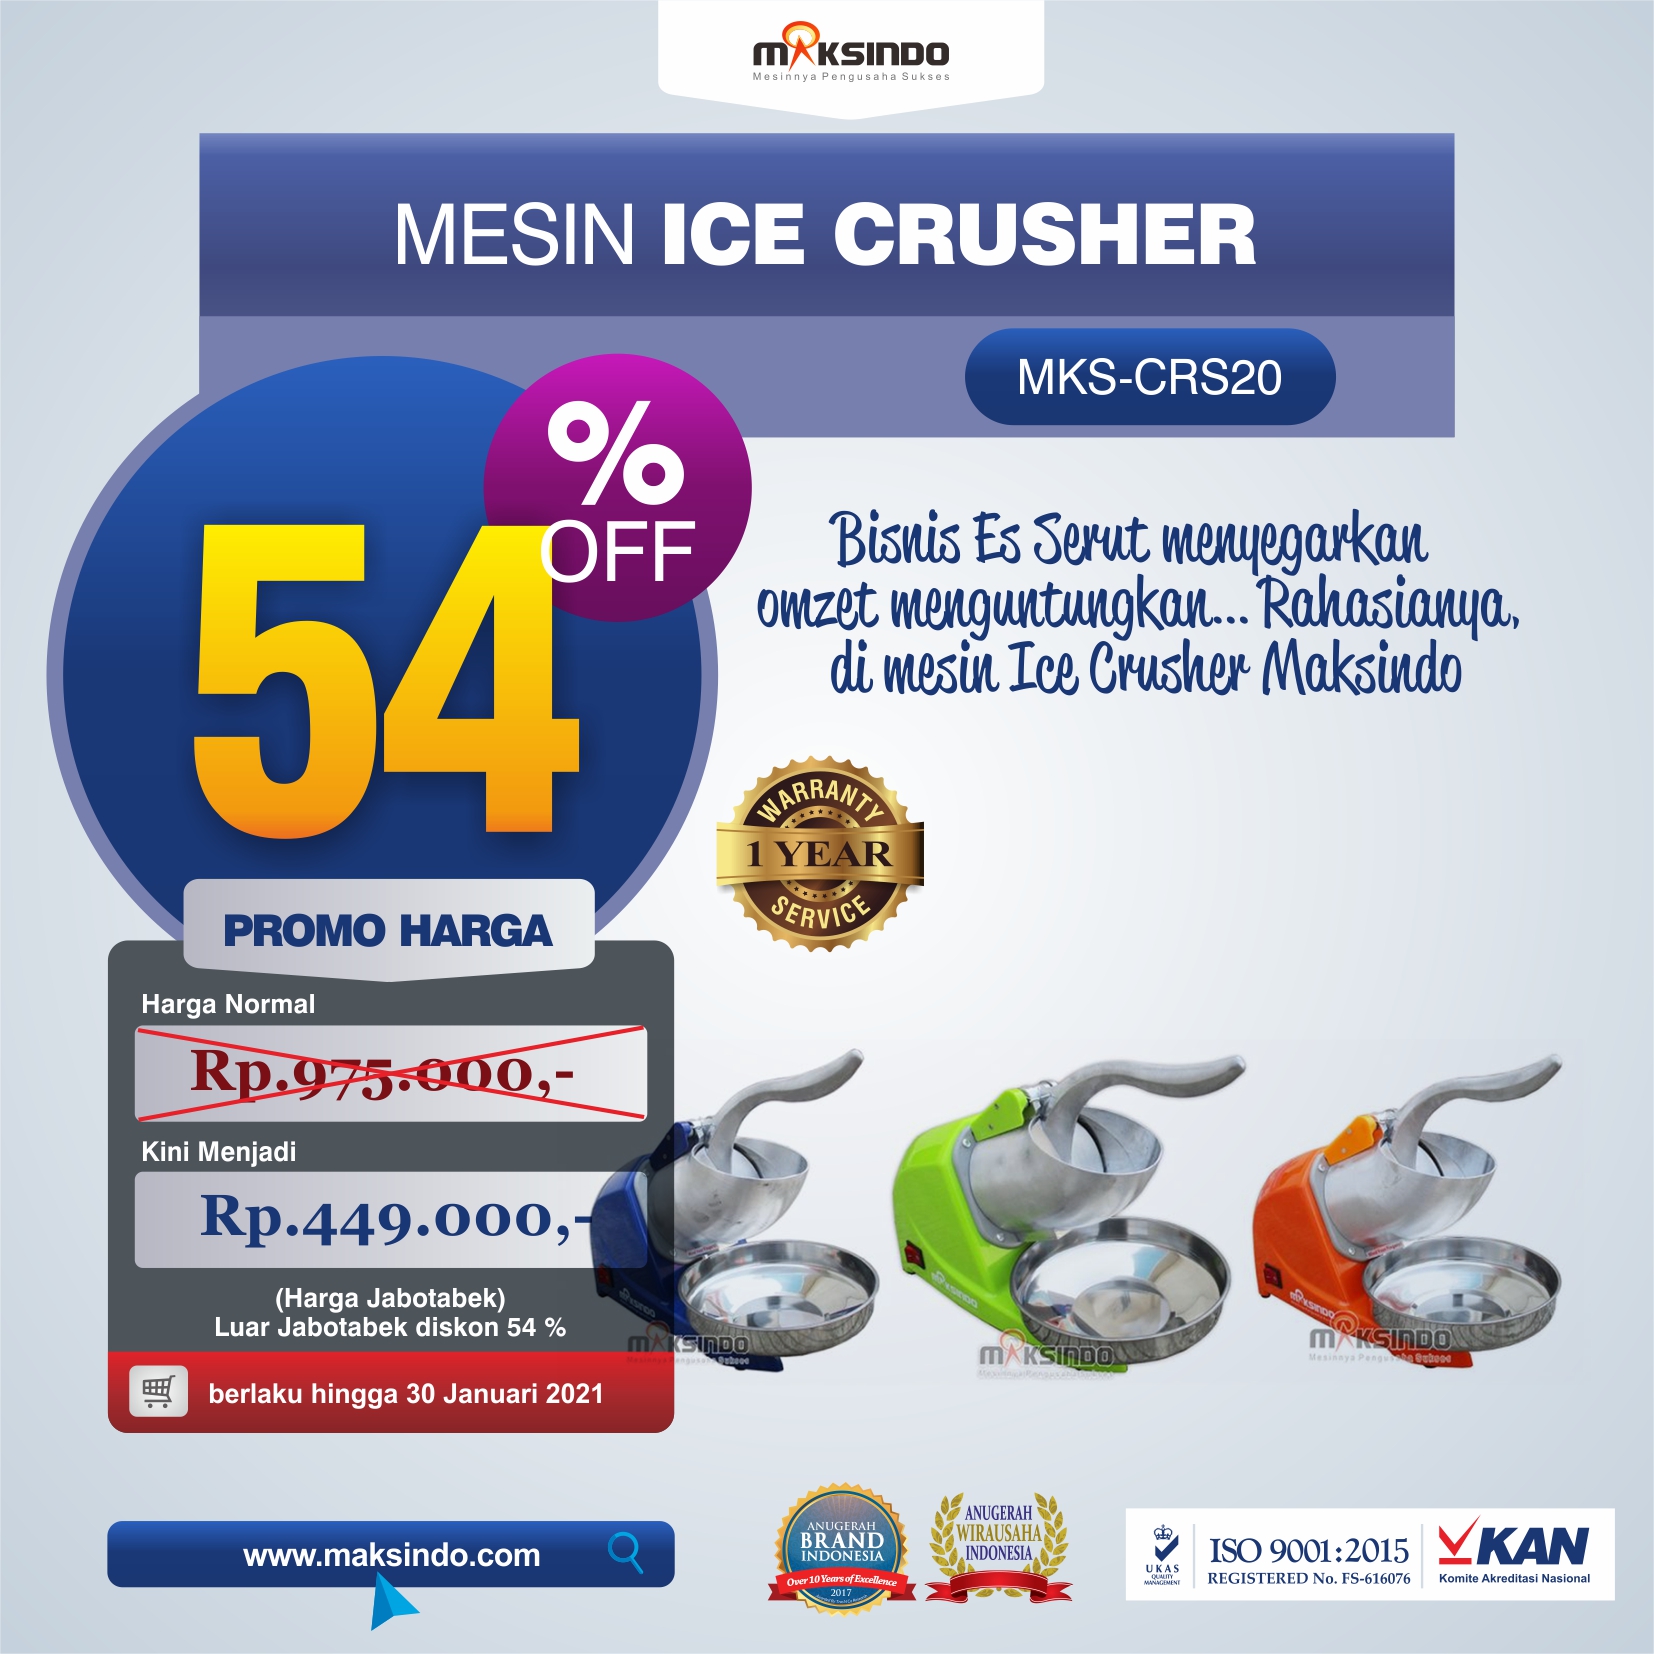 Jual Mesin Ice Crusher MKS-CRS20 di Semarang